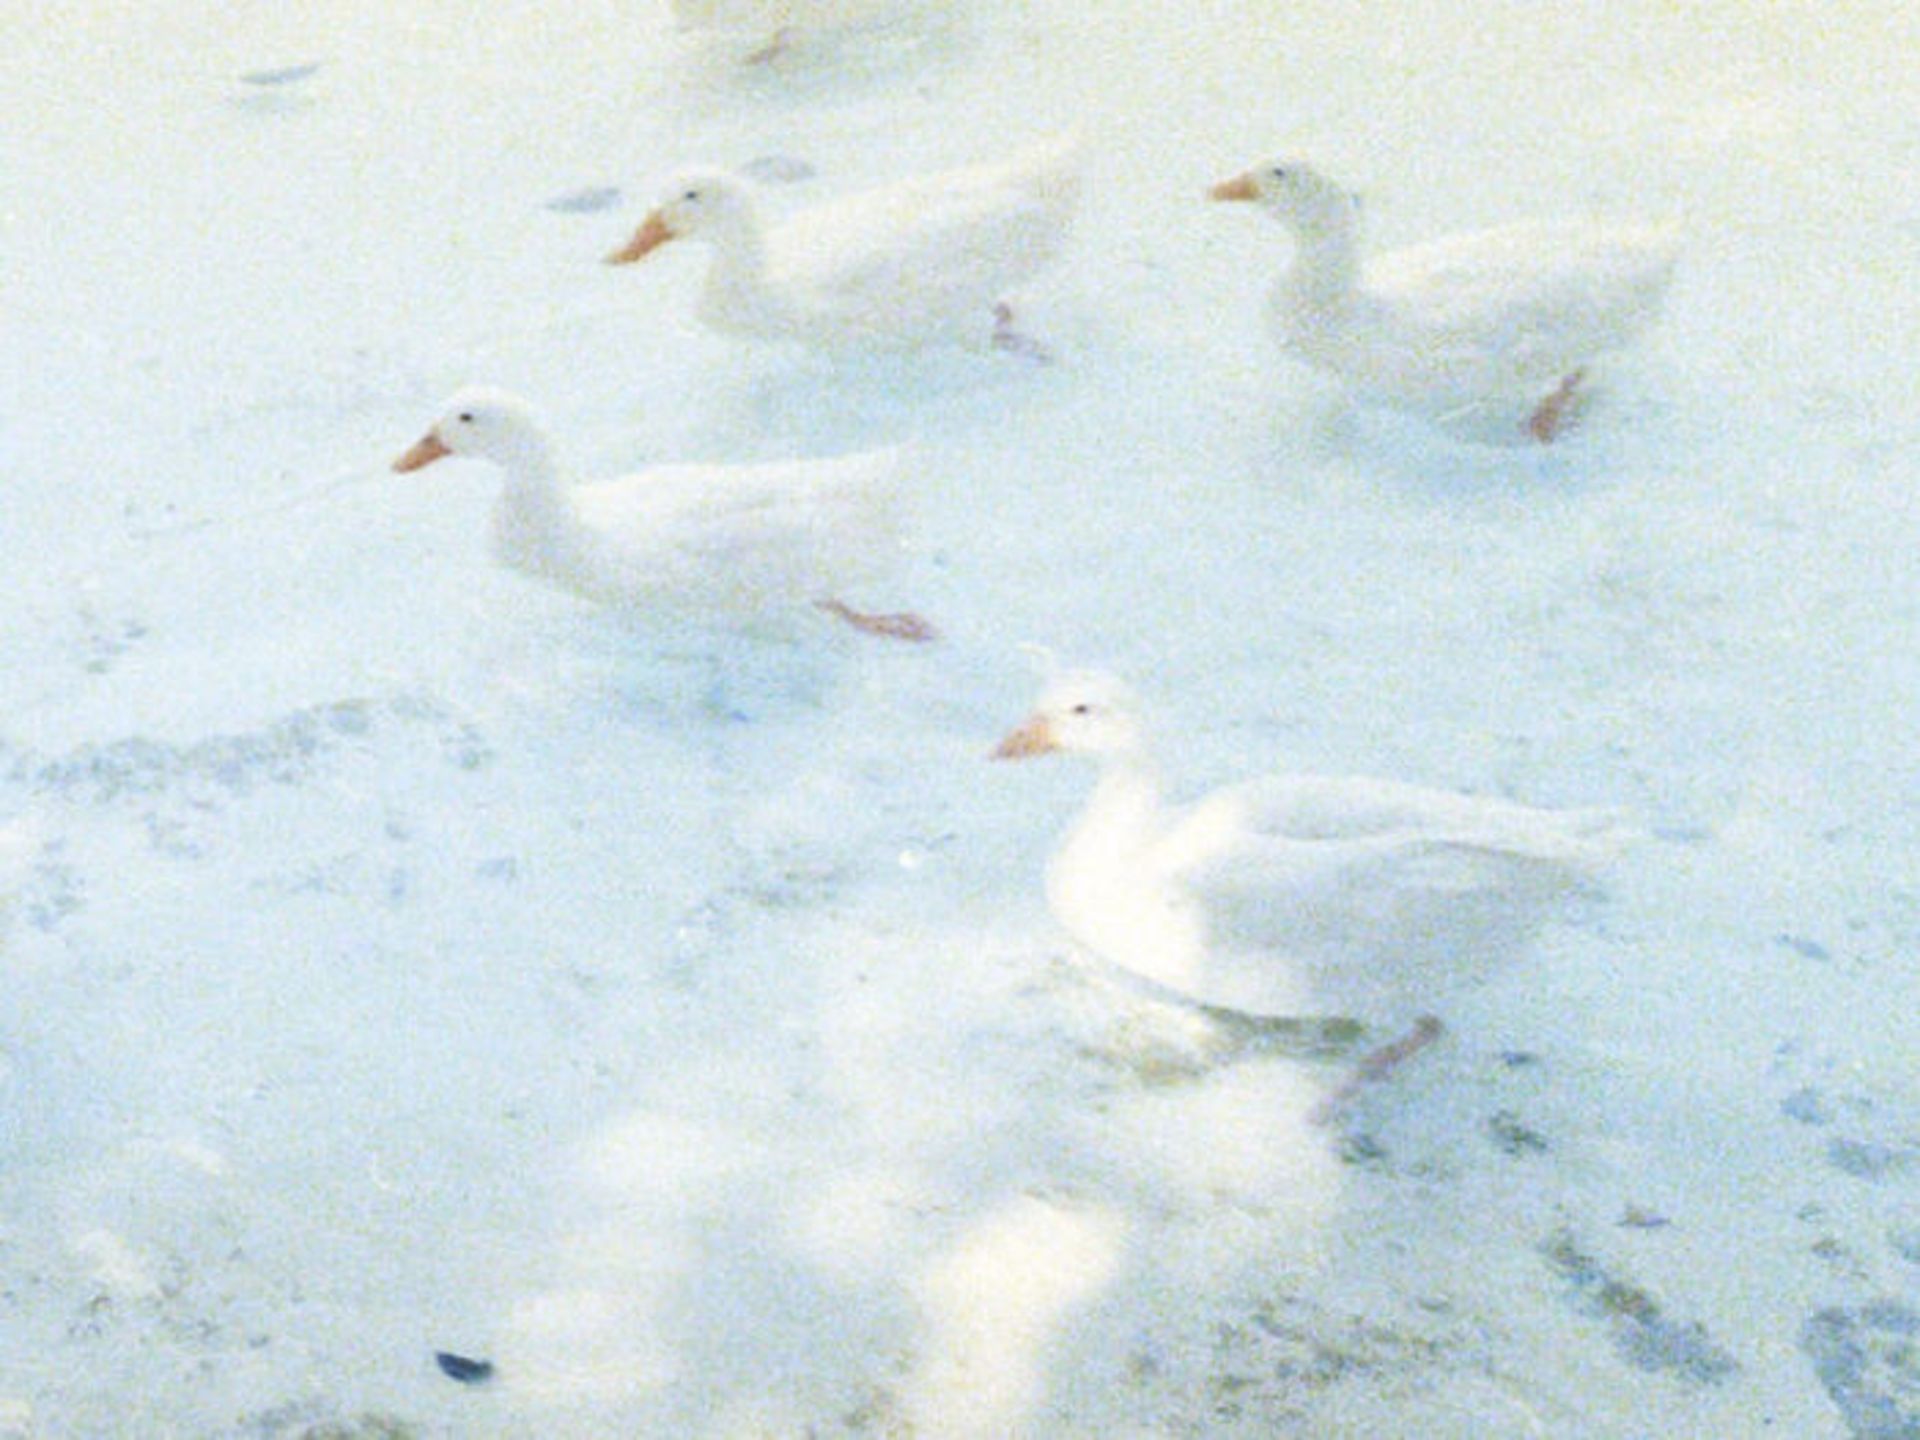 قدم زدن اردک ها در برف